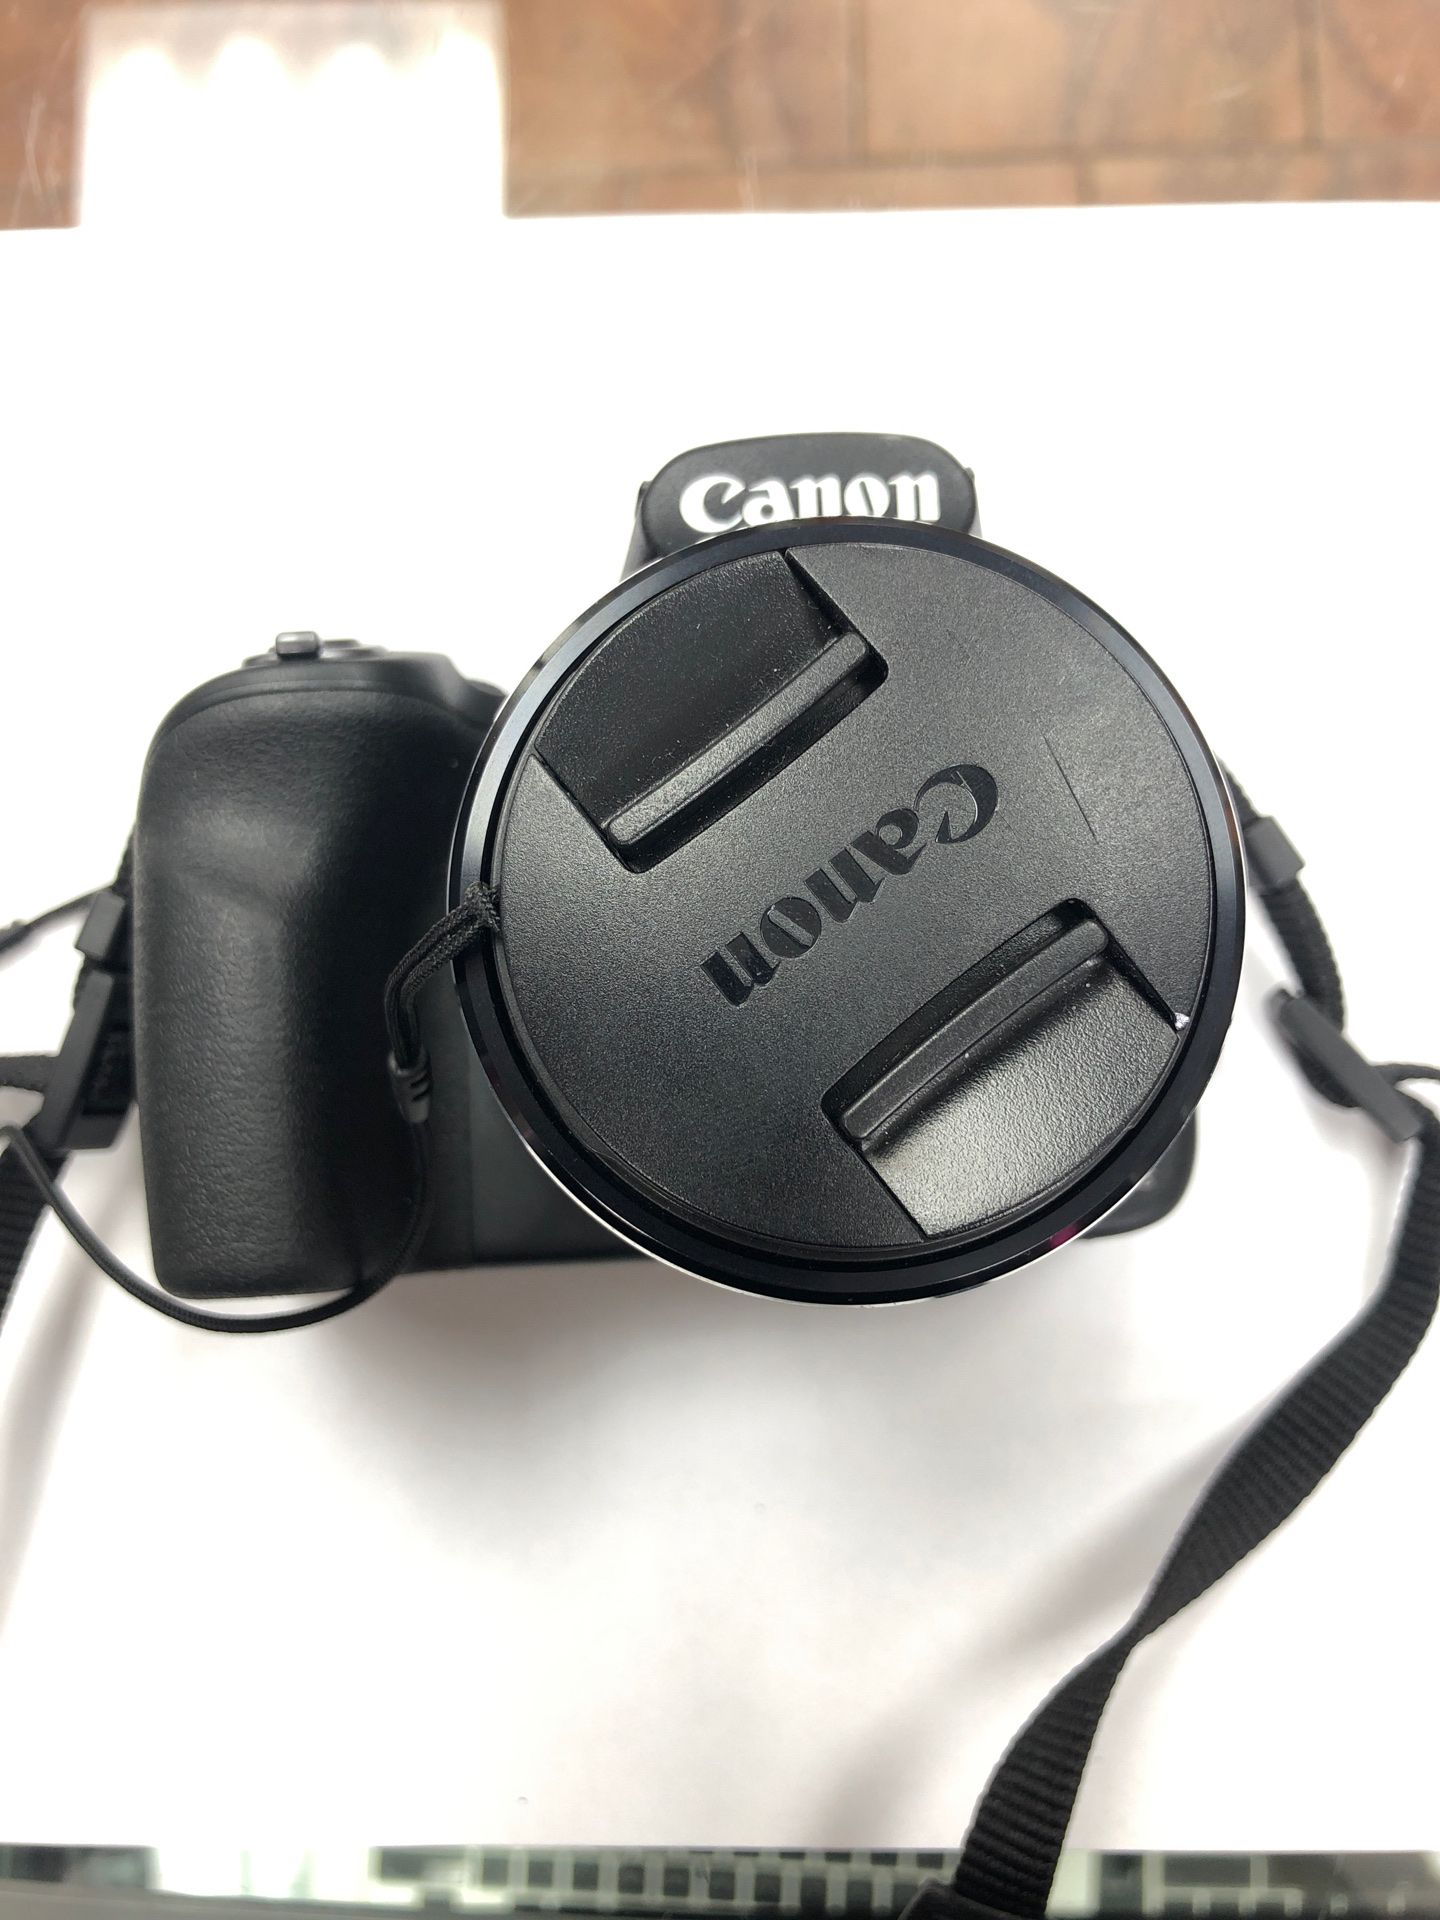 Canon SX 530 HS - Digital Camera - Tripod Included